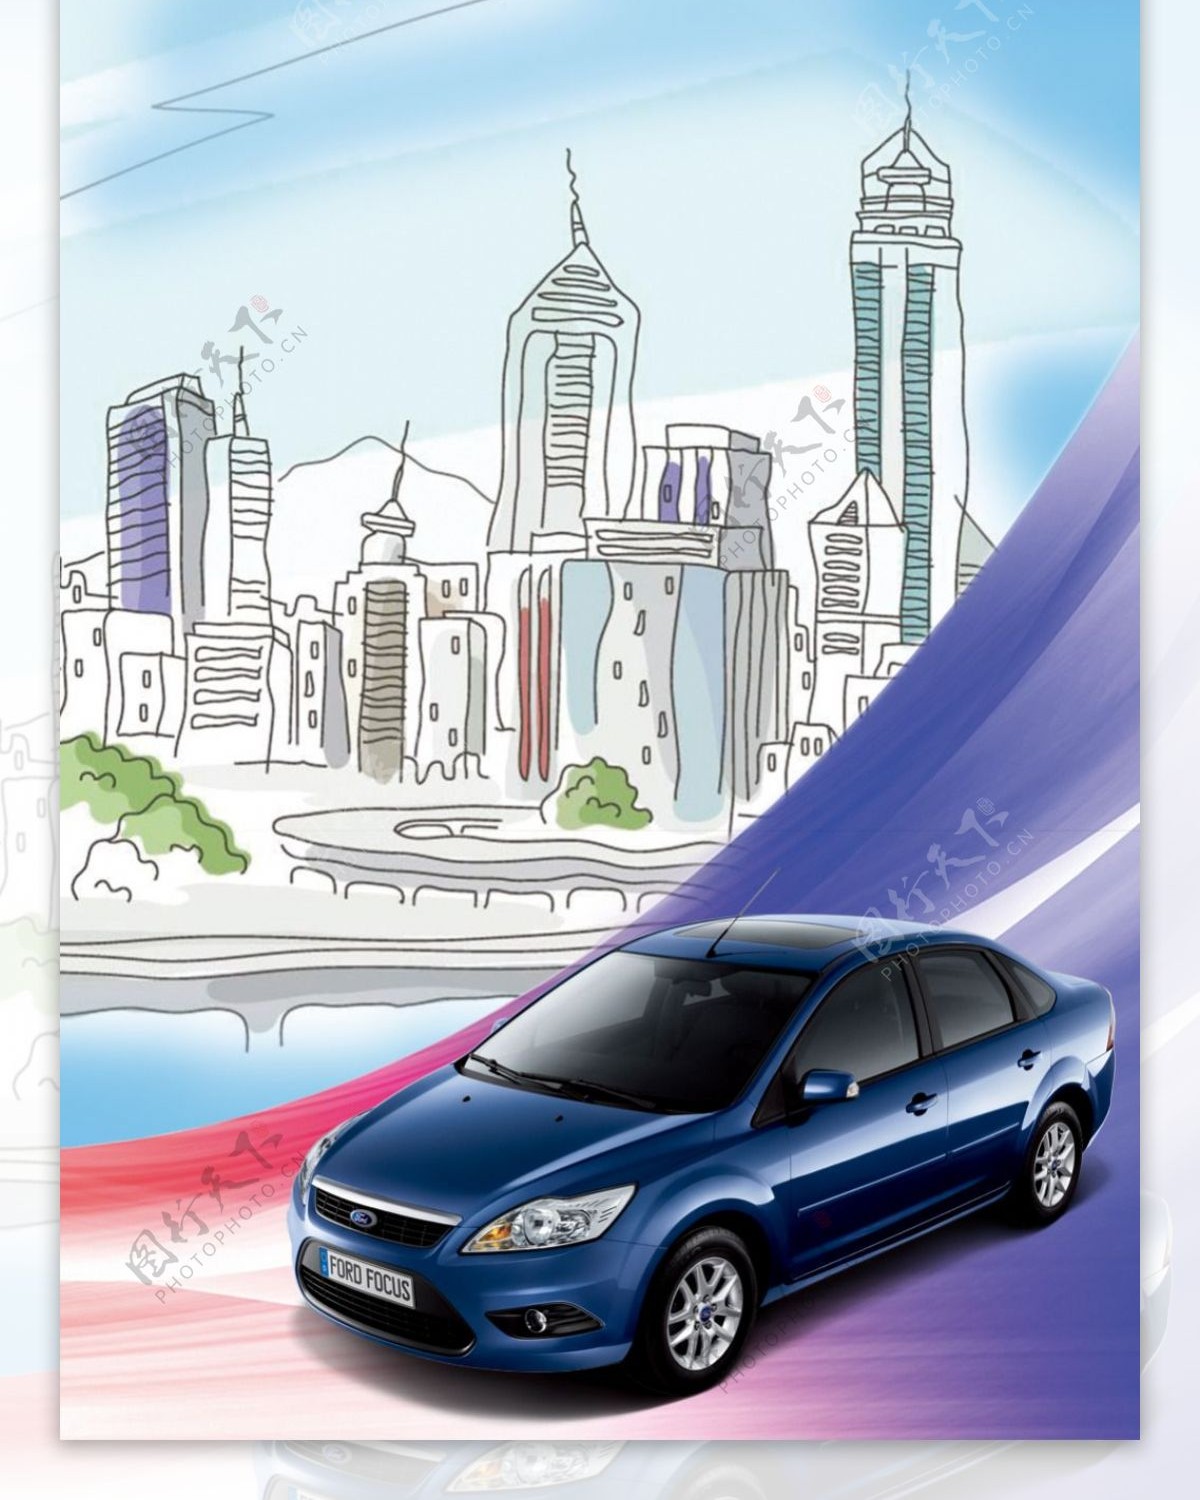 蓝色精美汽车展架模板素材海报画面设计